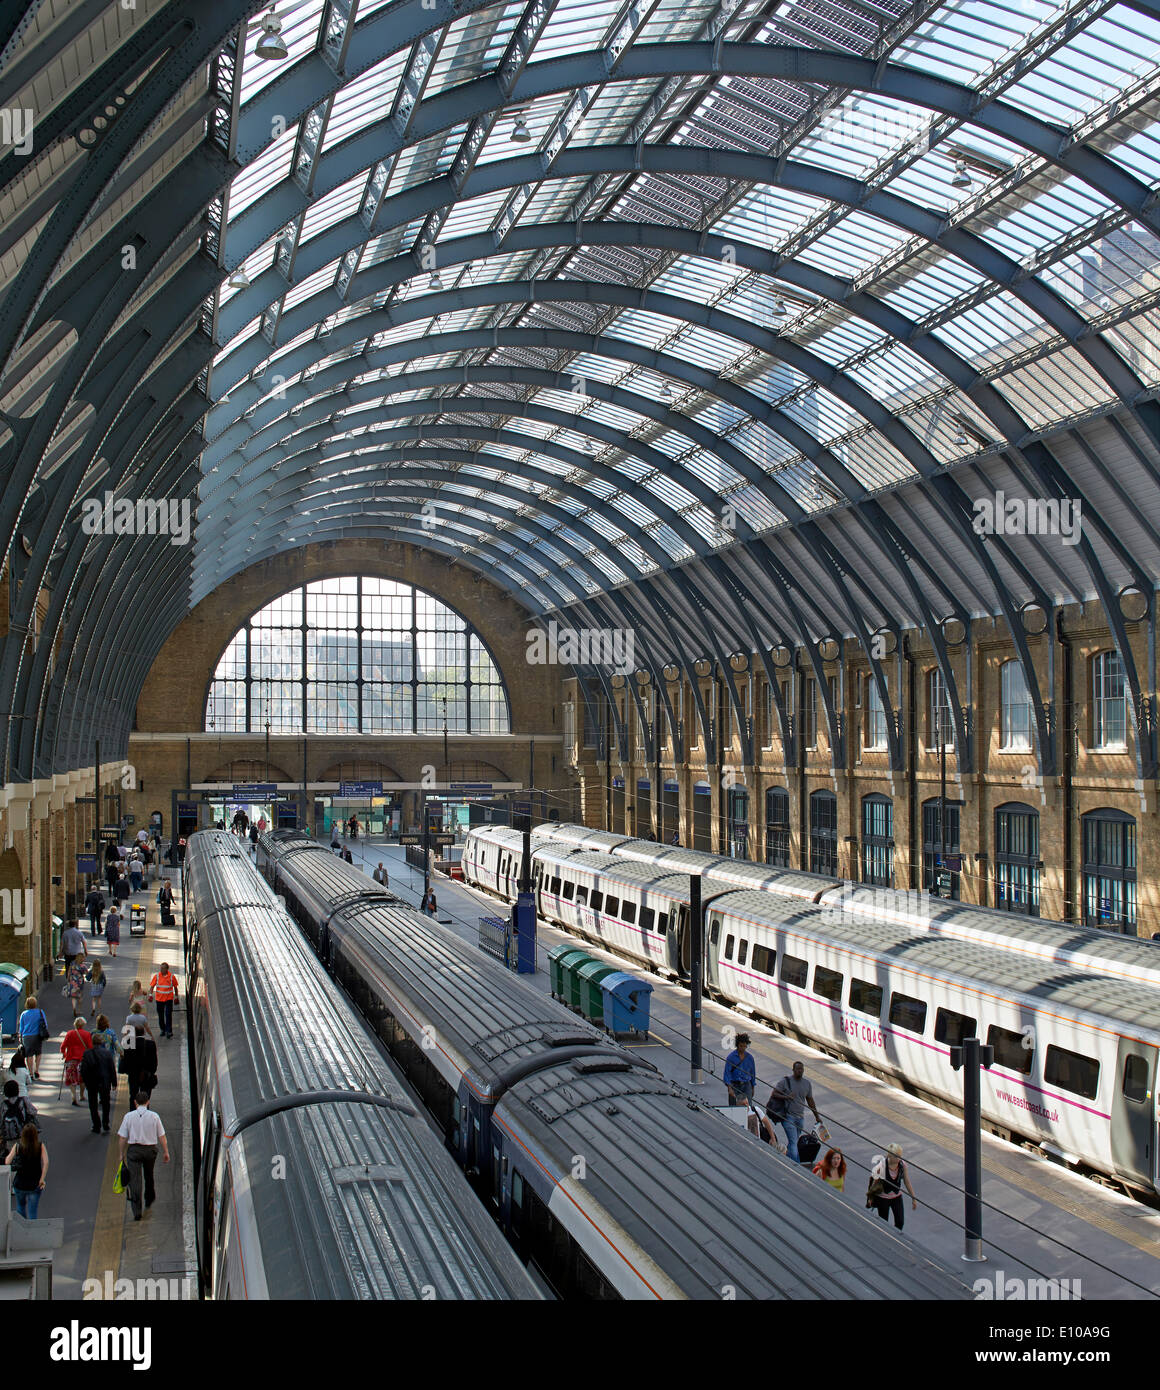 King's Cross trainshed, Londra, Regno Unito. Architetto: rete ferrovia, 2013. Ripristinato twin trainsheds, permettendo che la luce flood bac Foto Stock